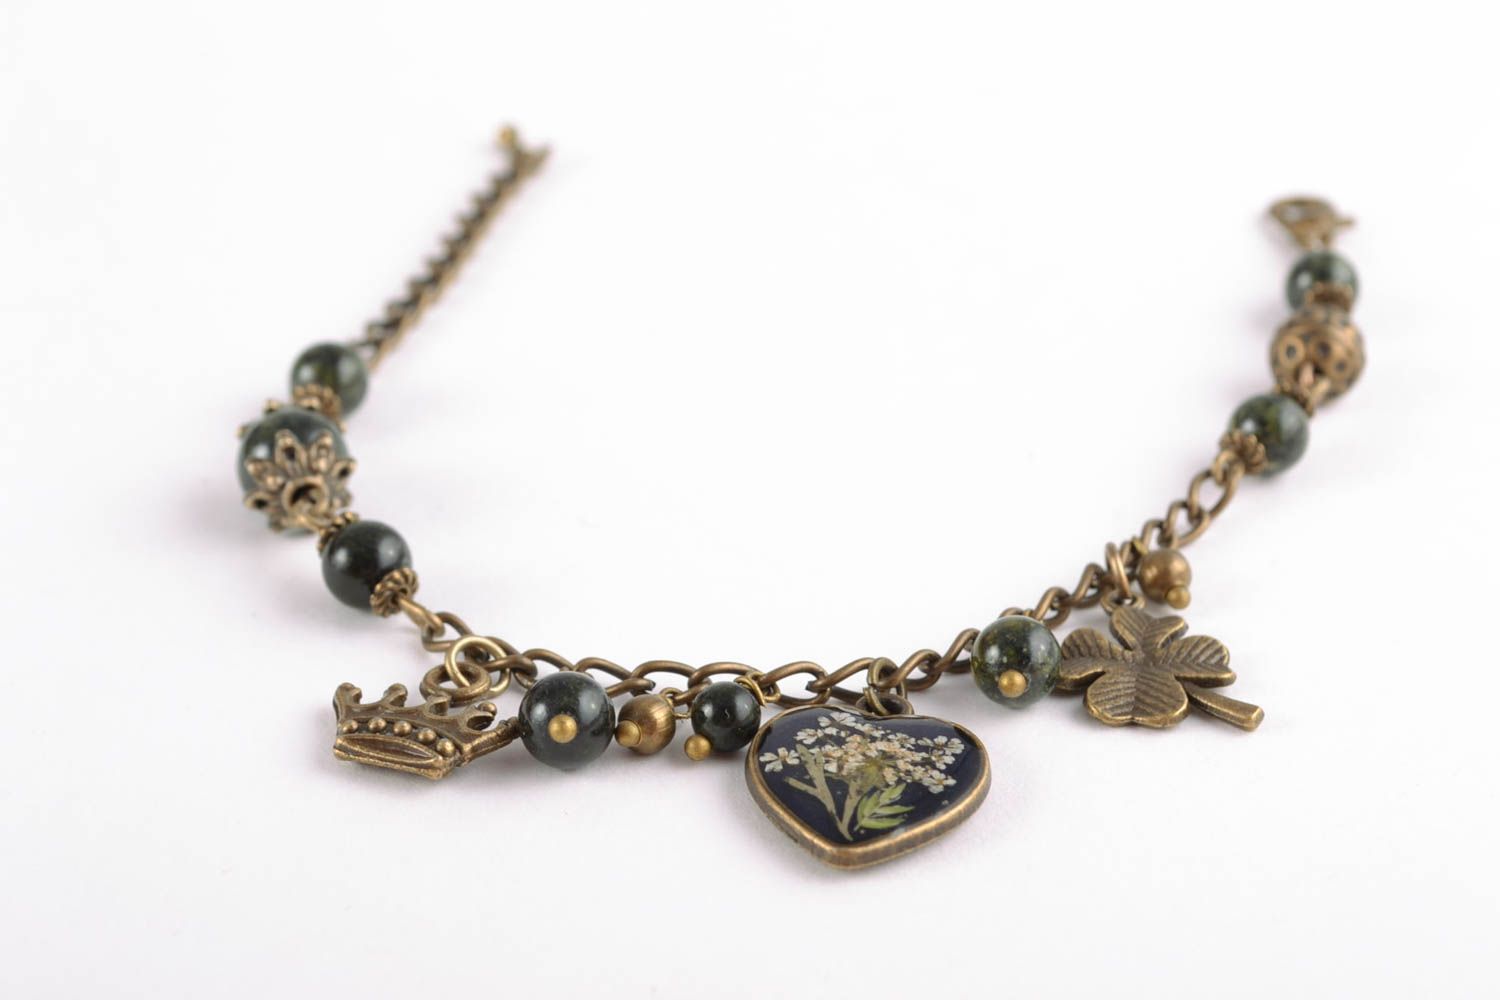 Wrist bracelet with dried flowers in epoxy resin photo 3